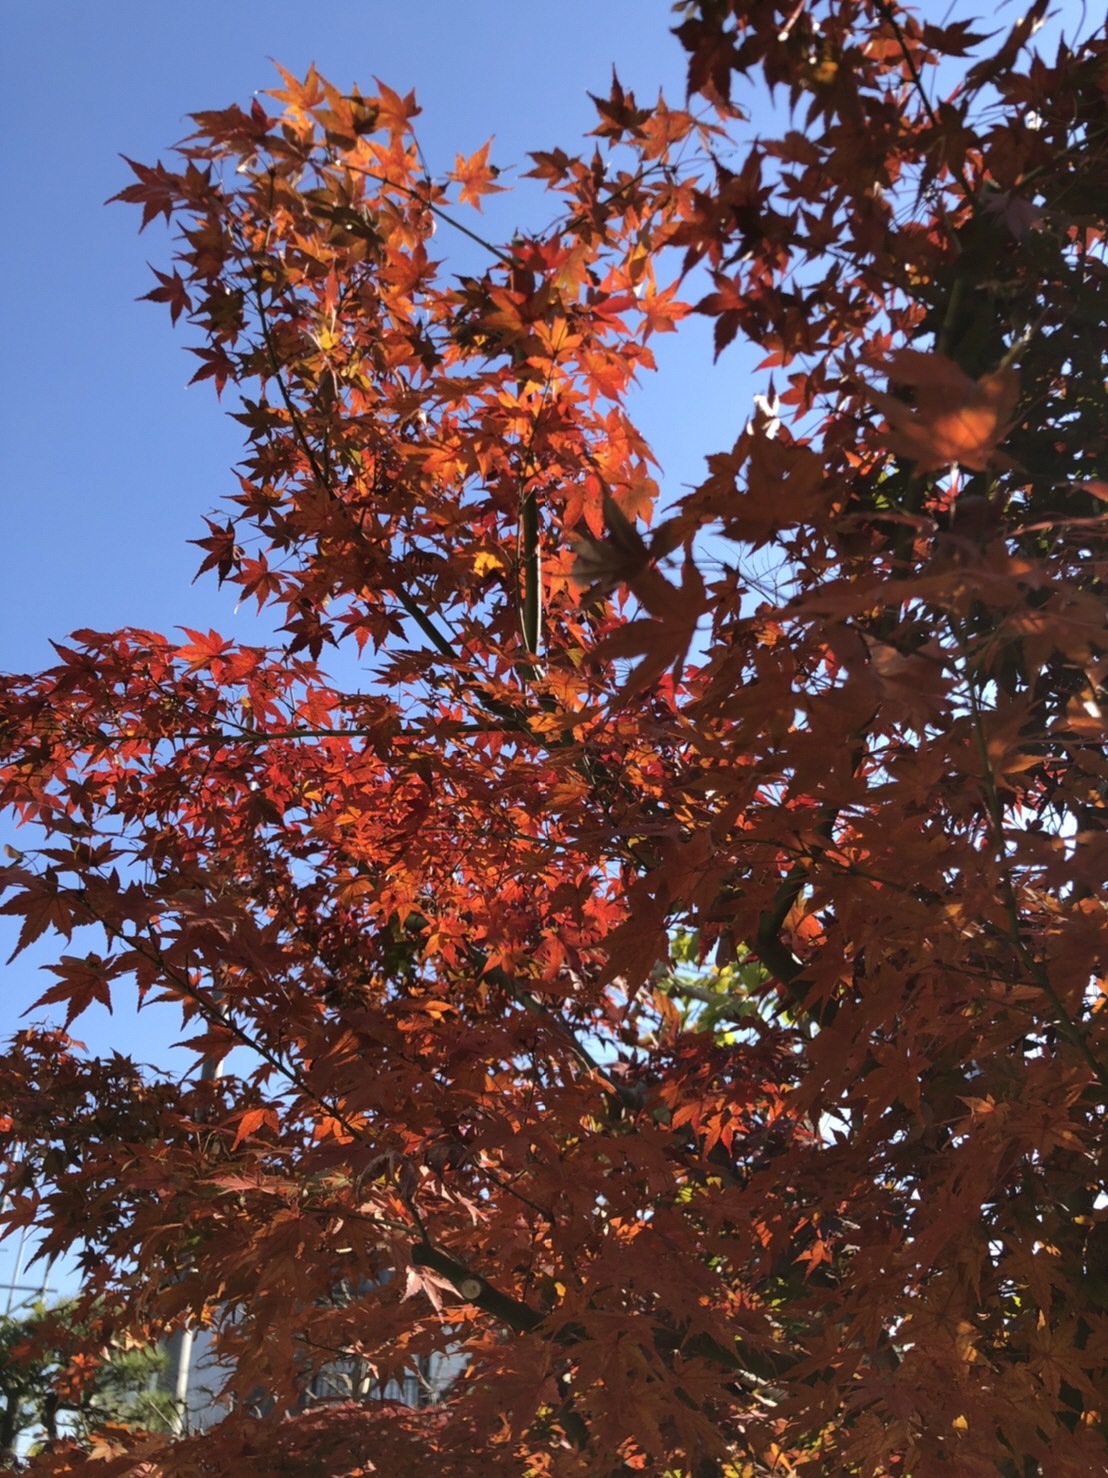 下からのアングルで撮影された陽の光を受けている紅葉の木